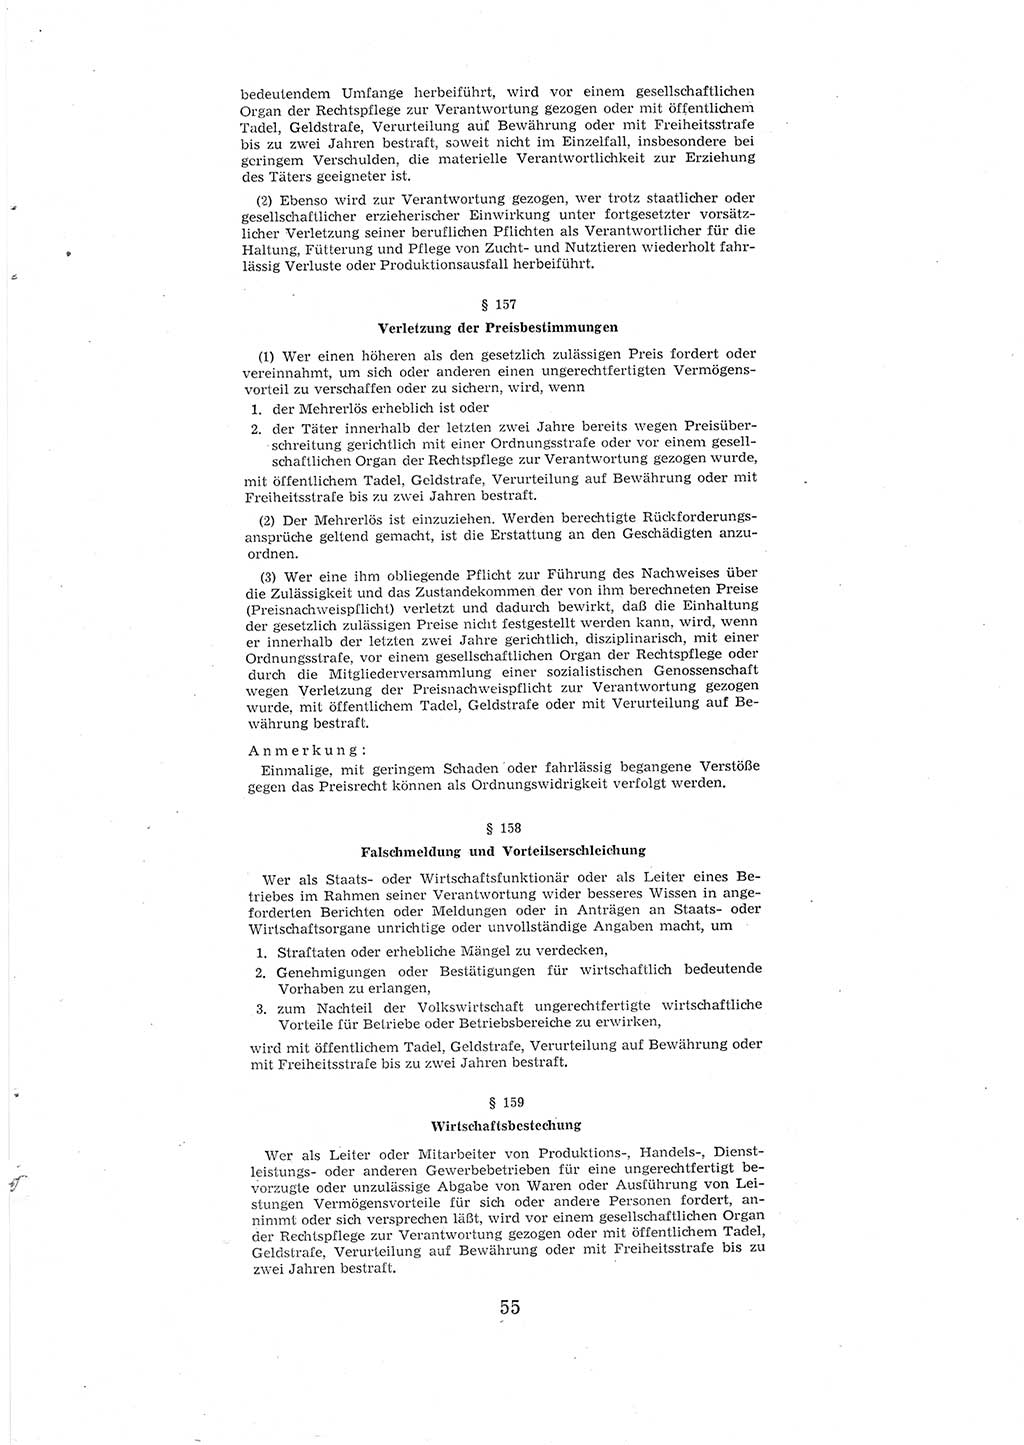 Entwurf des Strafgesetzbuches (StGB) der Deutschen Demokratischen Republik (DDR) 1967, Seite 55 (Entw. StGB DDR 1967, S. 55)